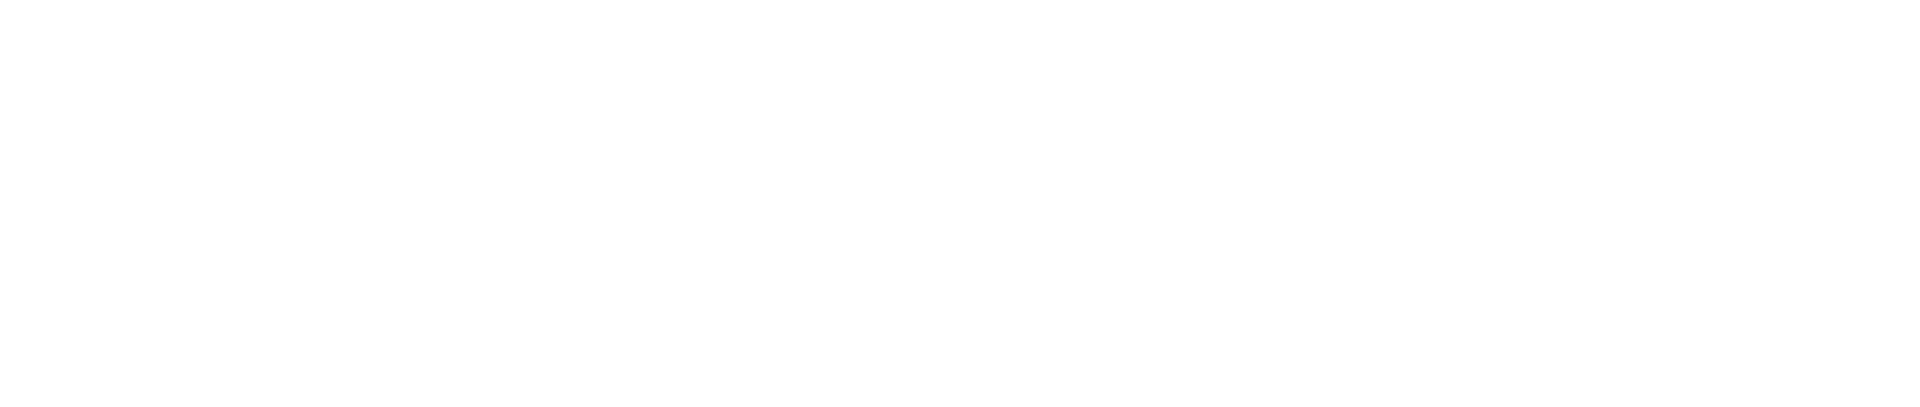 Logo del Plan de Recuperación y Transformación y Resiliencia